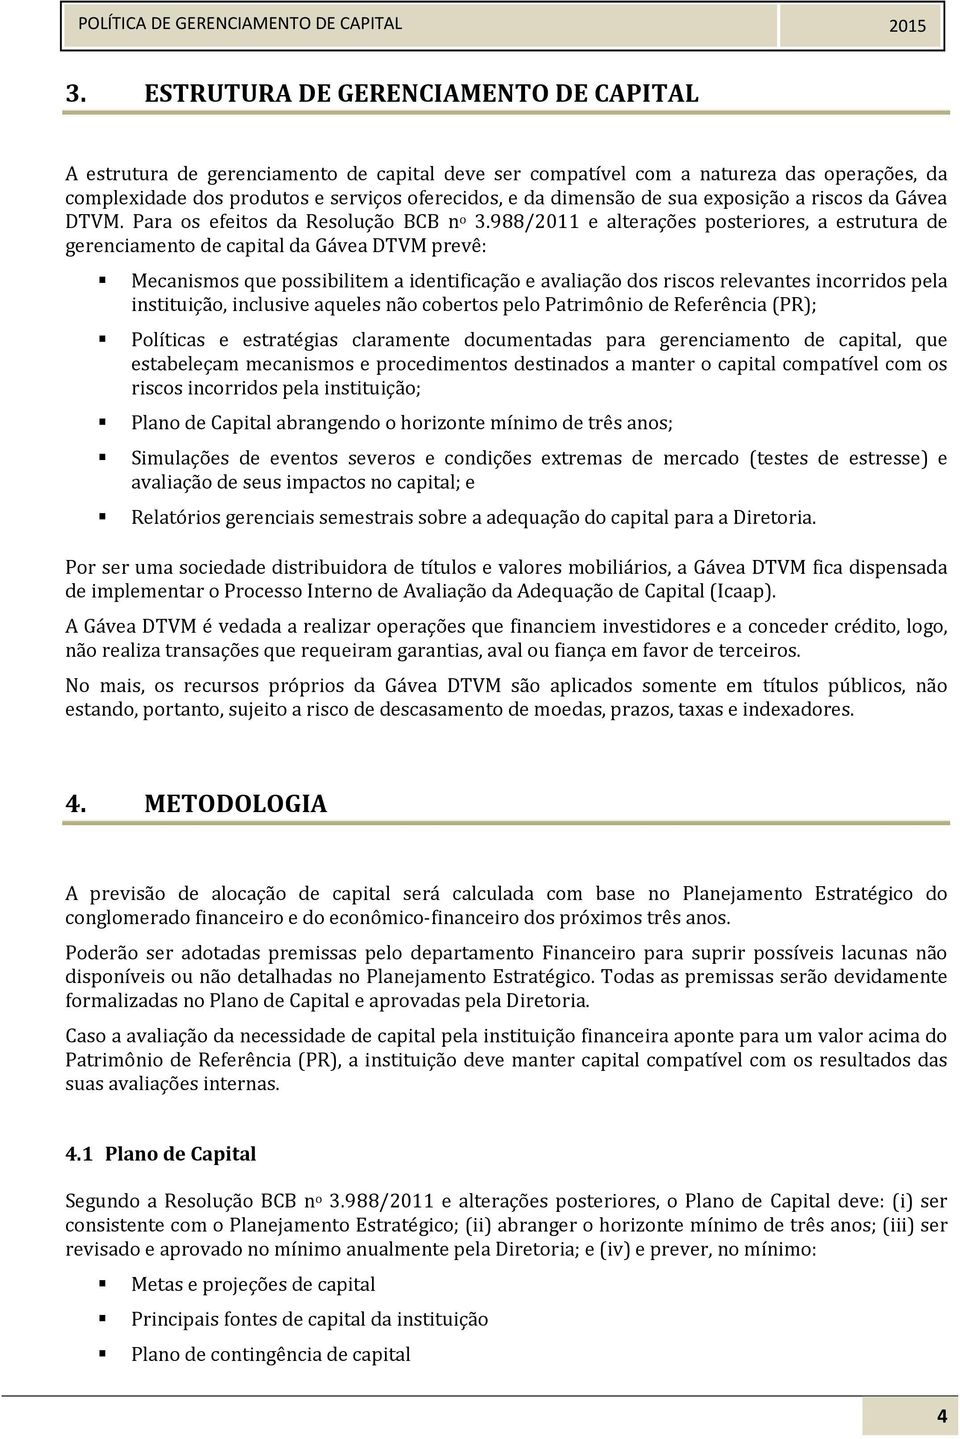 988/2011 e alterações posteriores, a estrutura de gerenciamento de capital da Gávea DTVM prevê: Mecanismos que possibilitem a identificação e avaliação dos riscos relevantes incorridos pela